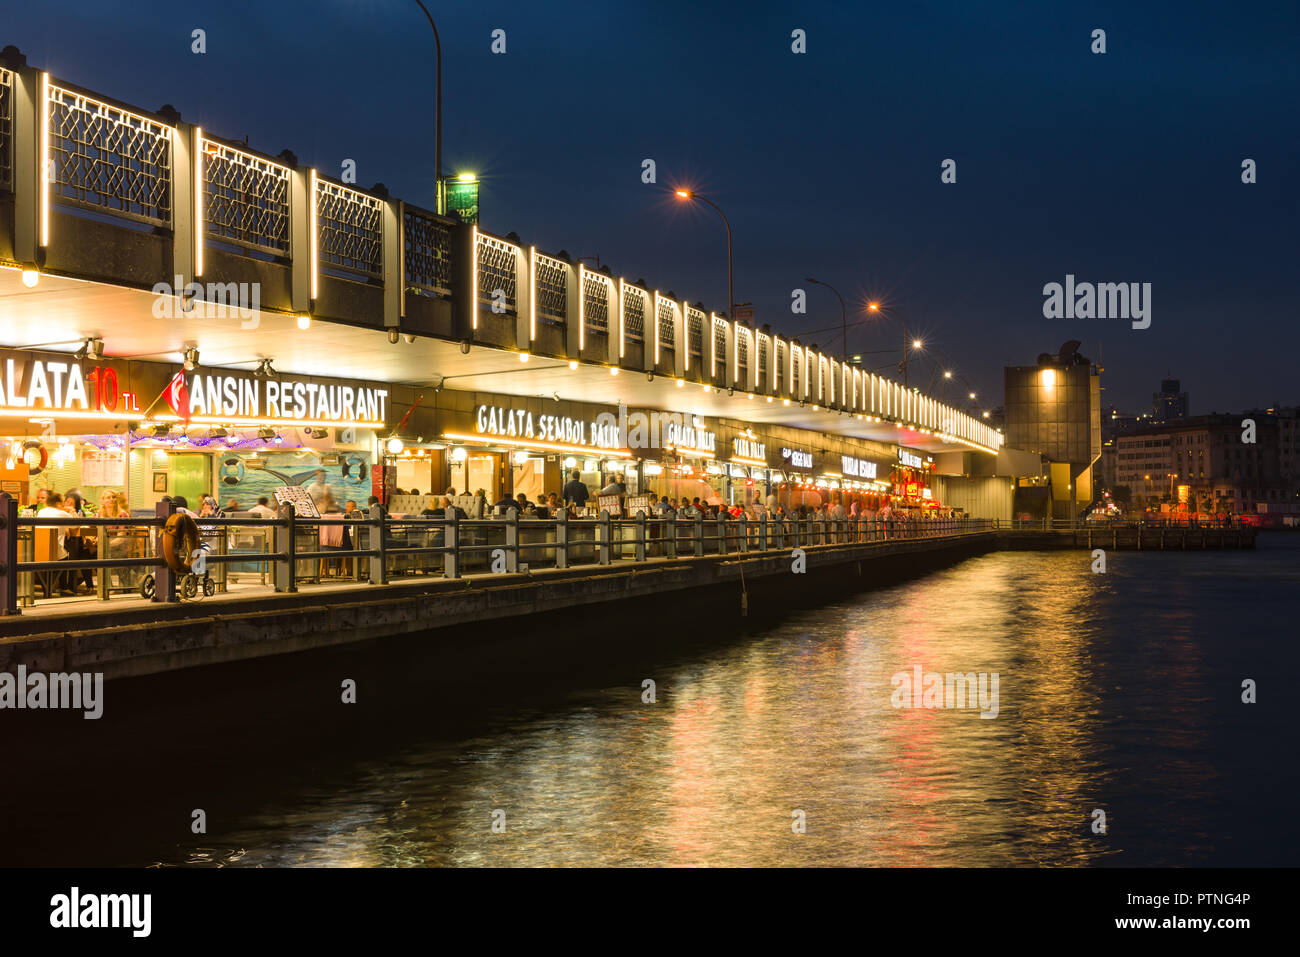 Il Ponte di Galata al crepuscolo con ristoranti illuminato, diners può essere visto nei ristoranti, Istanbul, Turchia Foto Stock